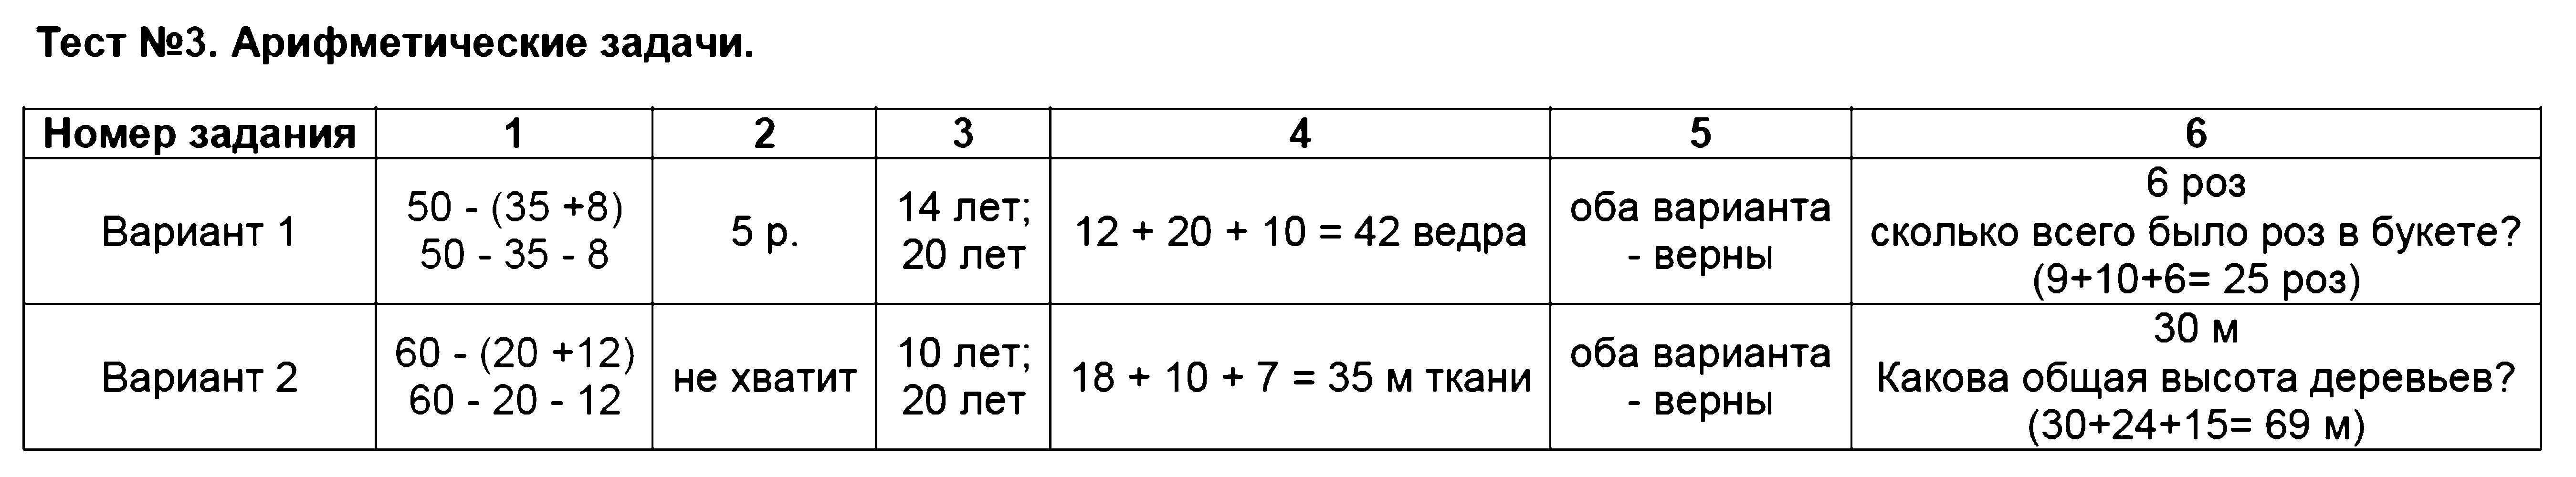 ГДЗ Математика 2 класс - Тест 3. Арифметические задачи